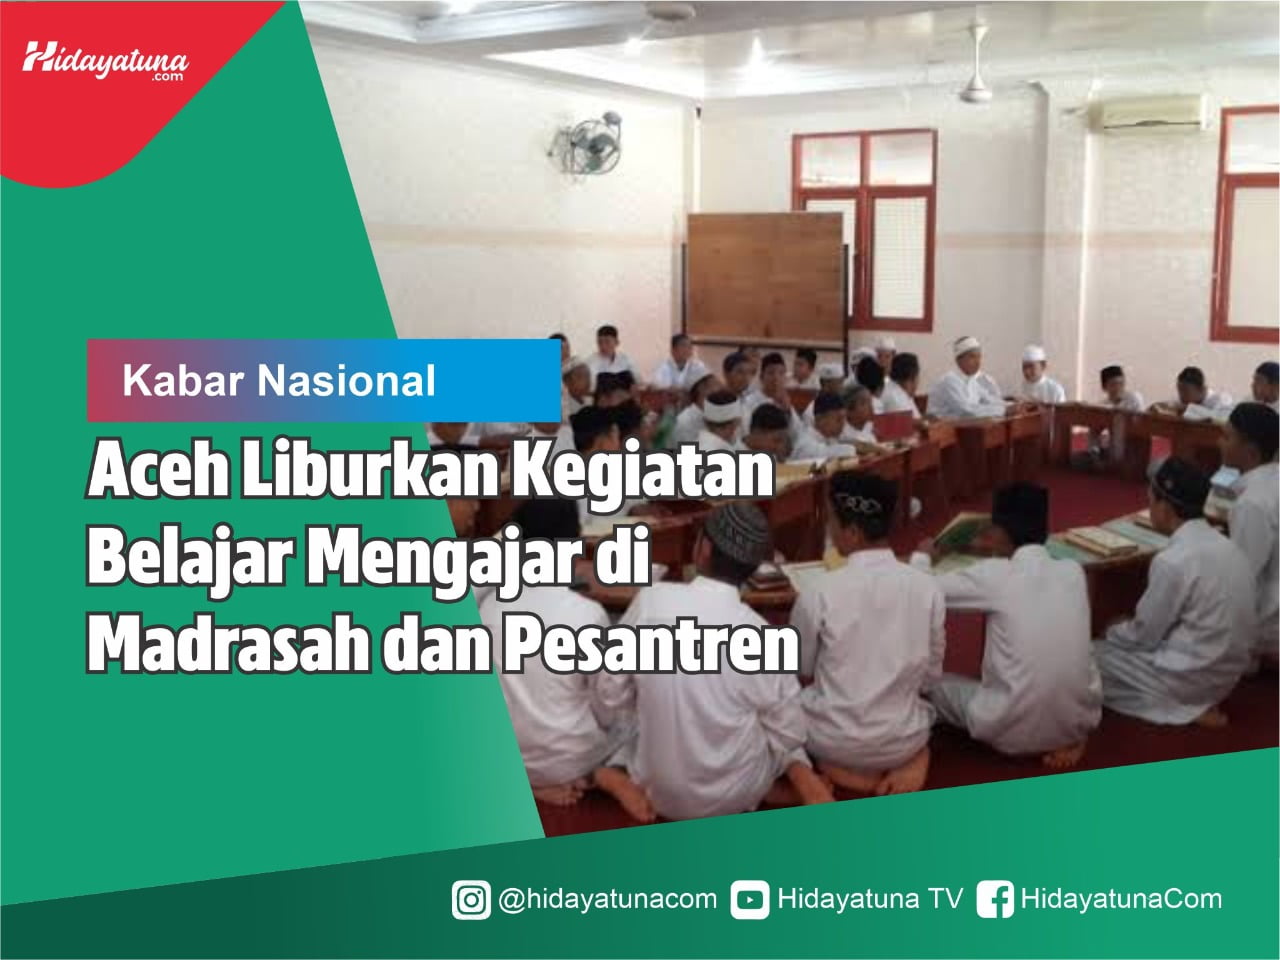  Aceh Liburkan Kegiatan Belajar Mengajar di Madrasah dan Pesantren